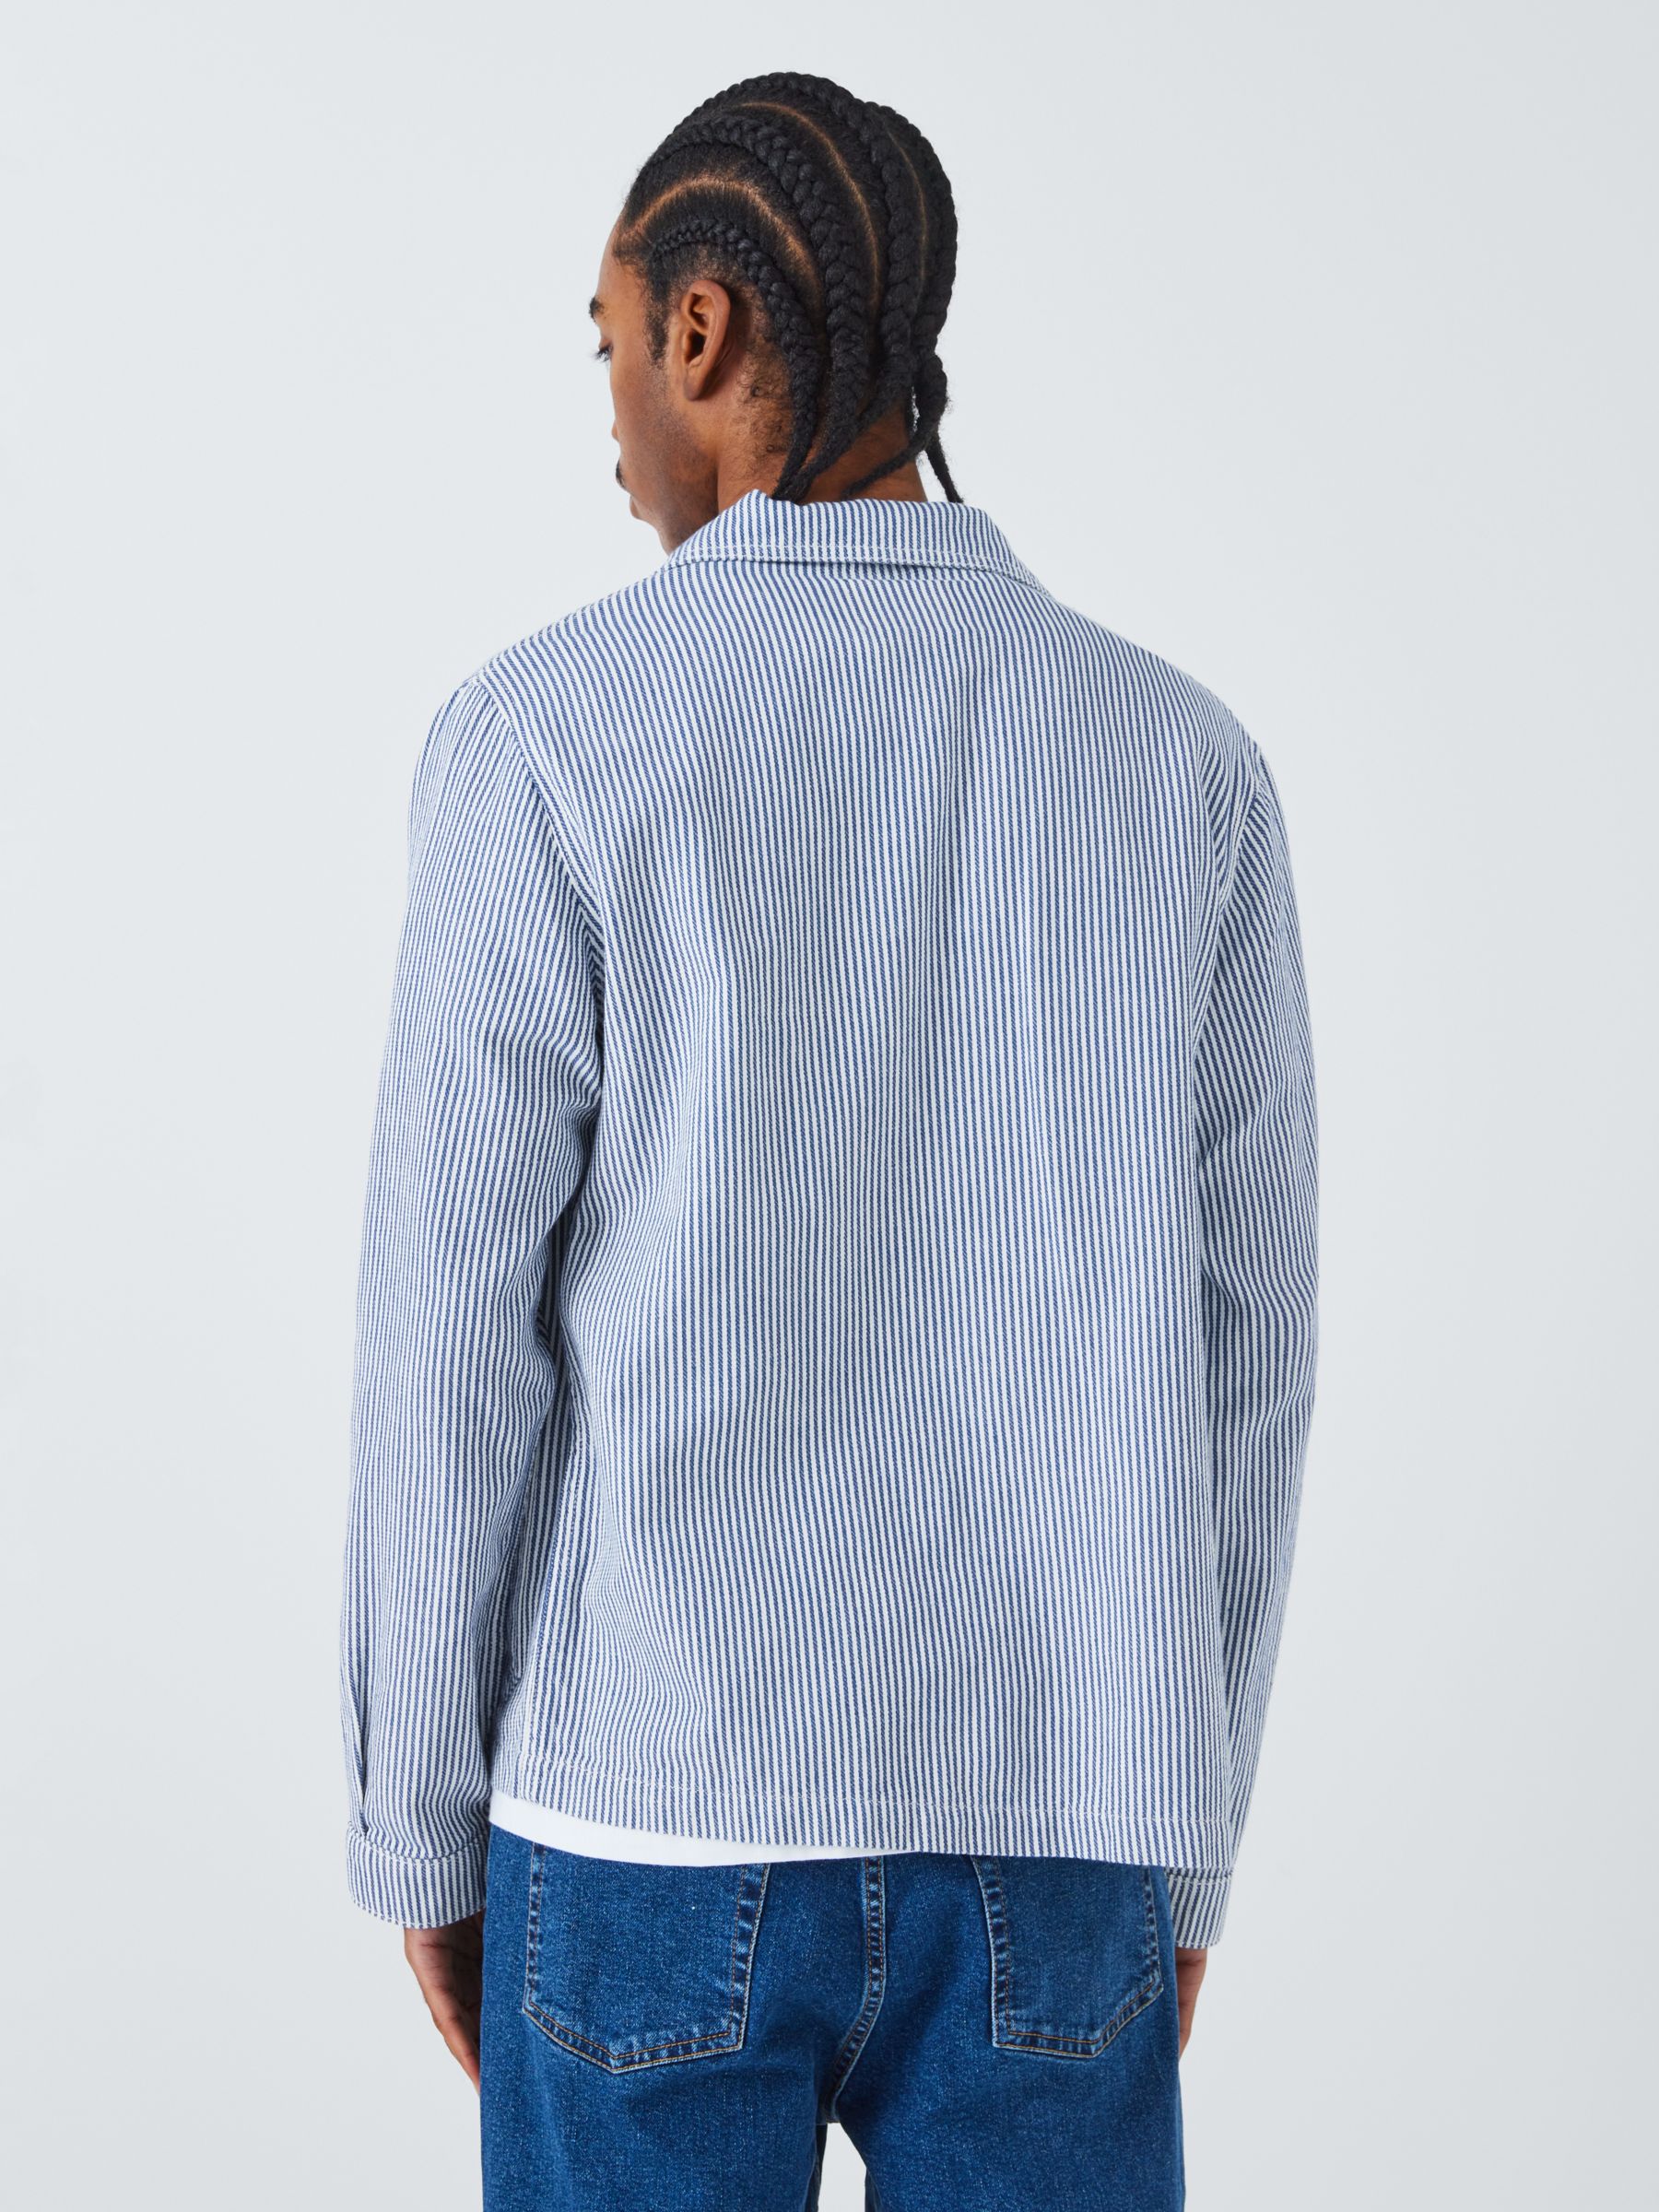 La Paz Cotton Worker Jacket, Blue Stripes, L